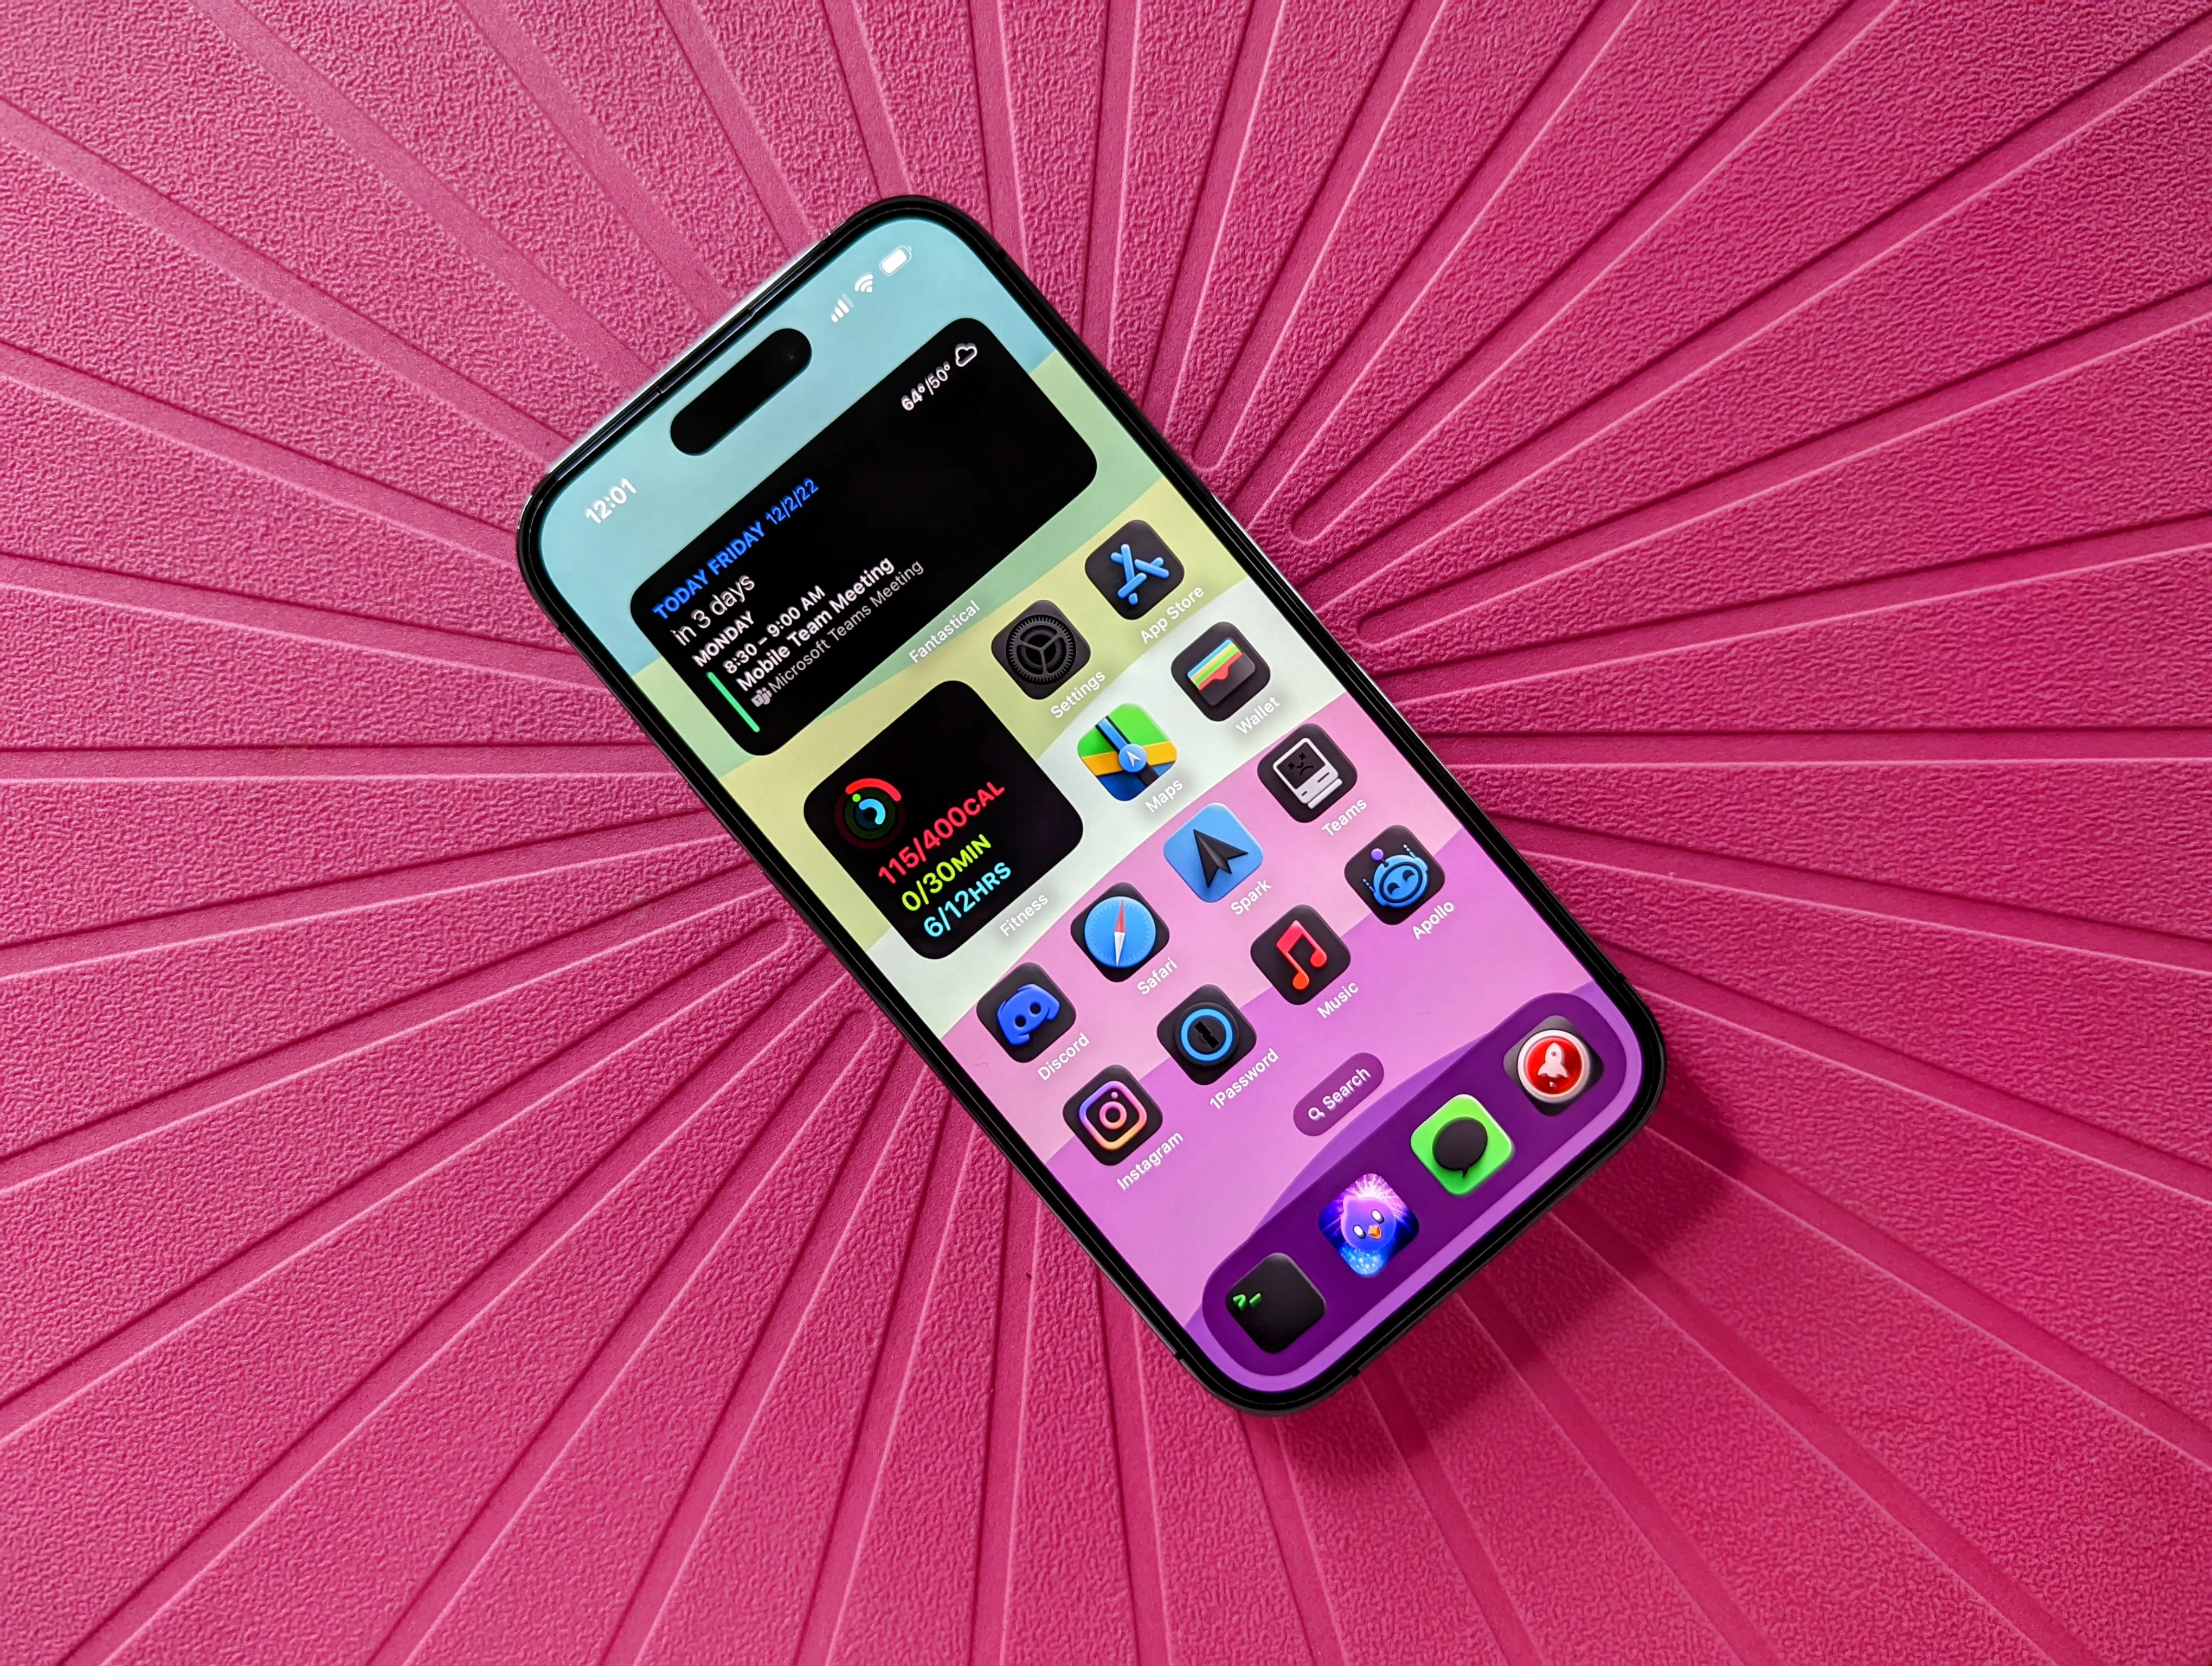 Tela inicial do iPhone 14 Pro com ícones de aplicativos personalizados e os widgets Activity e Fantastical